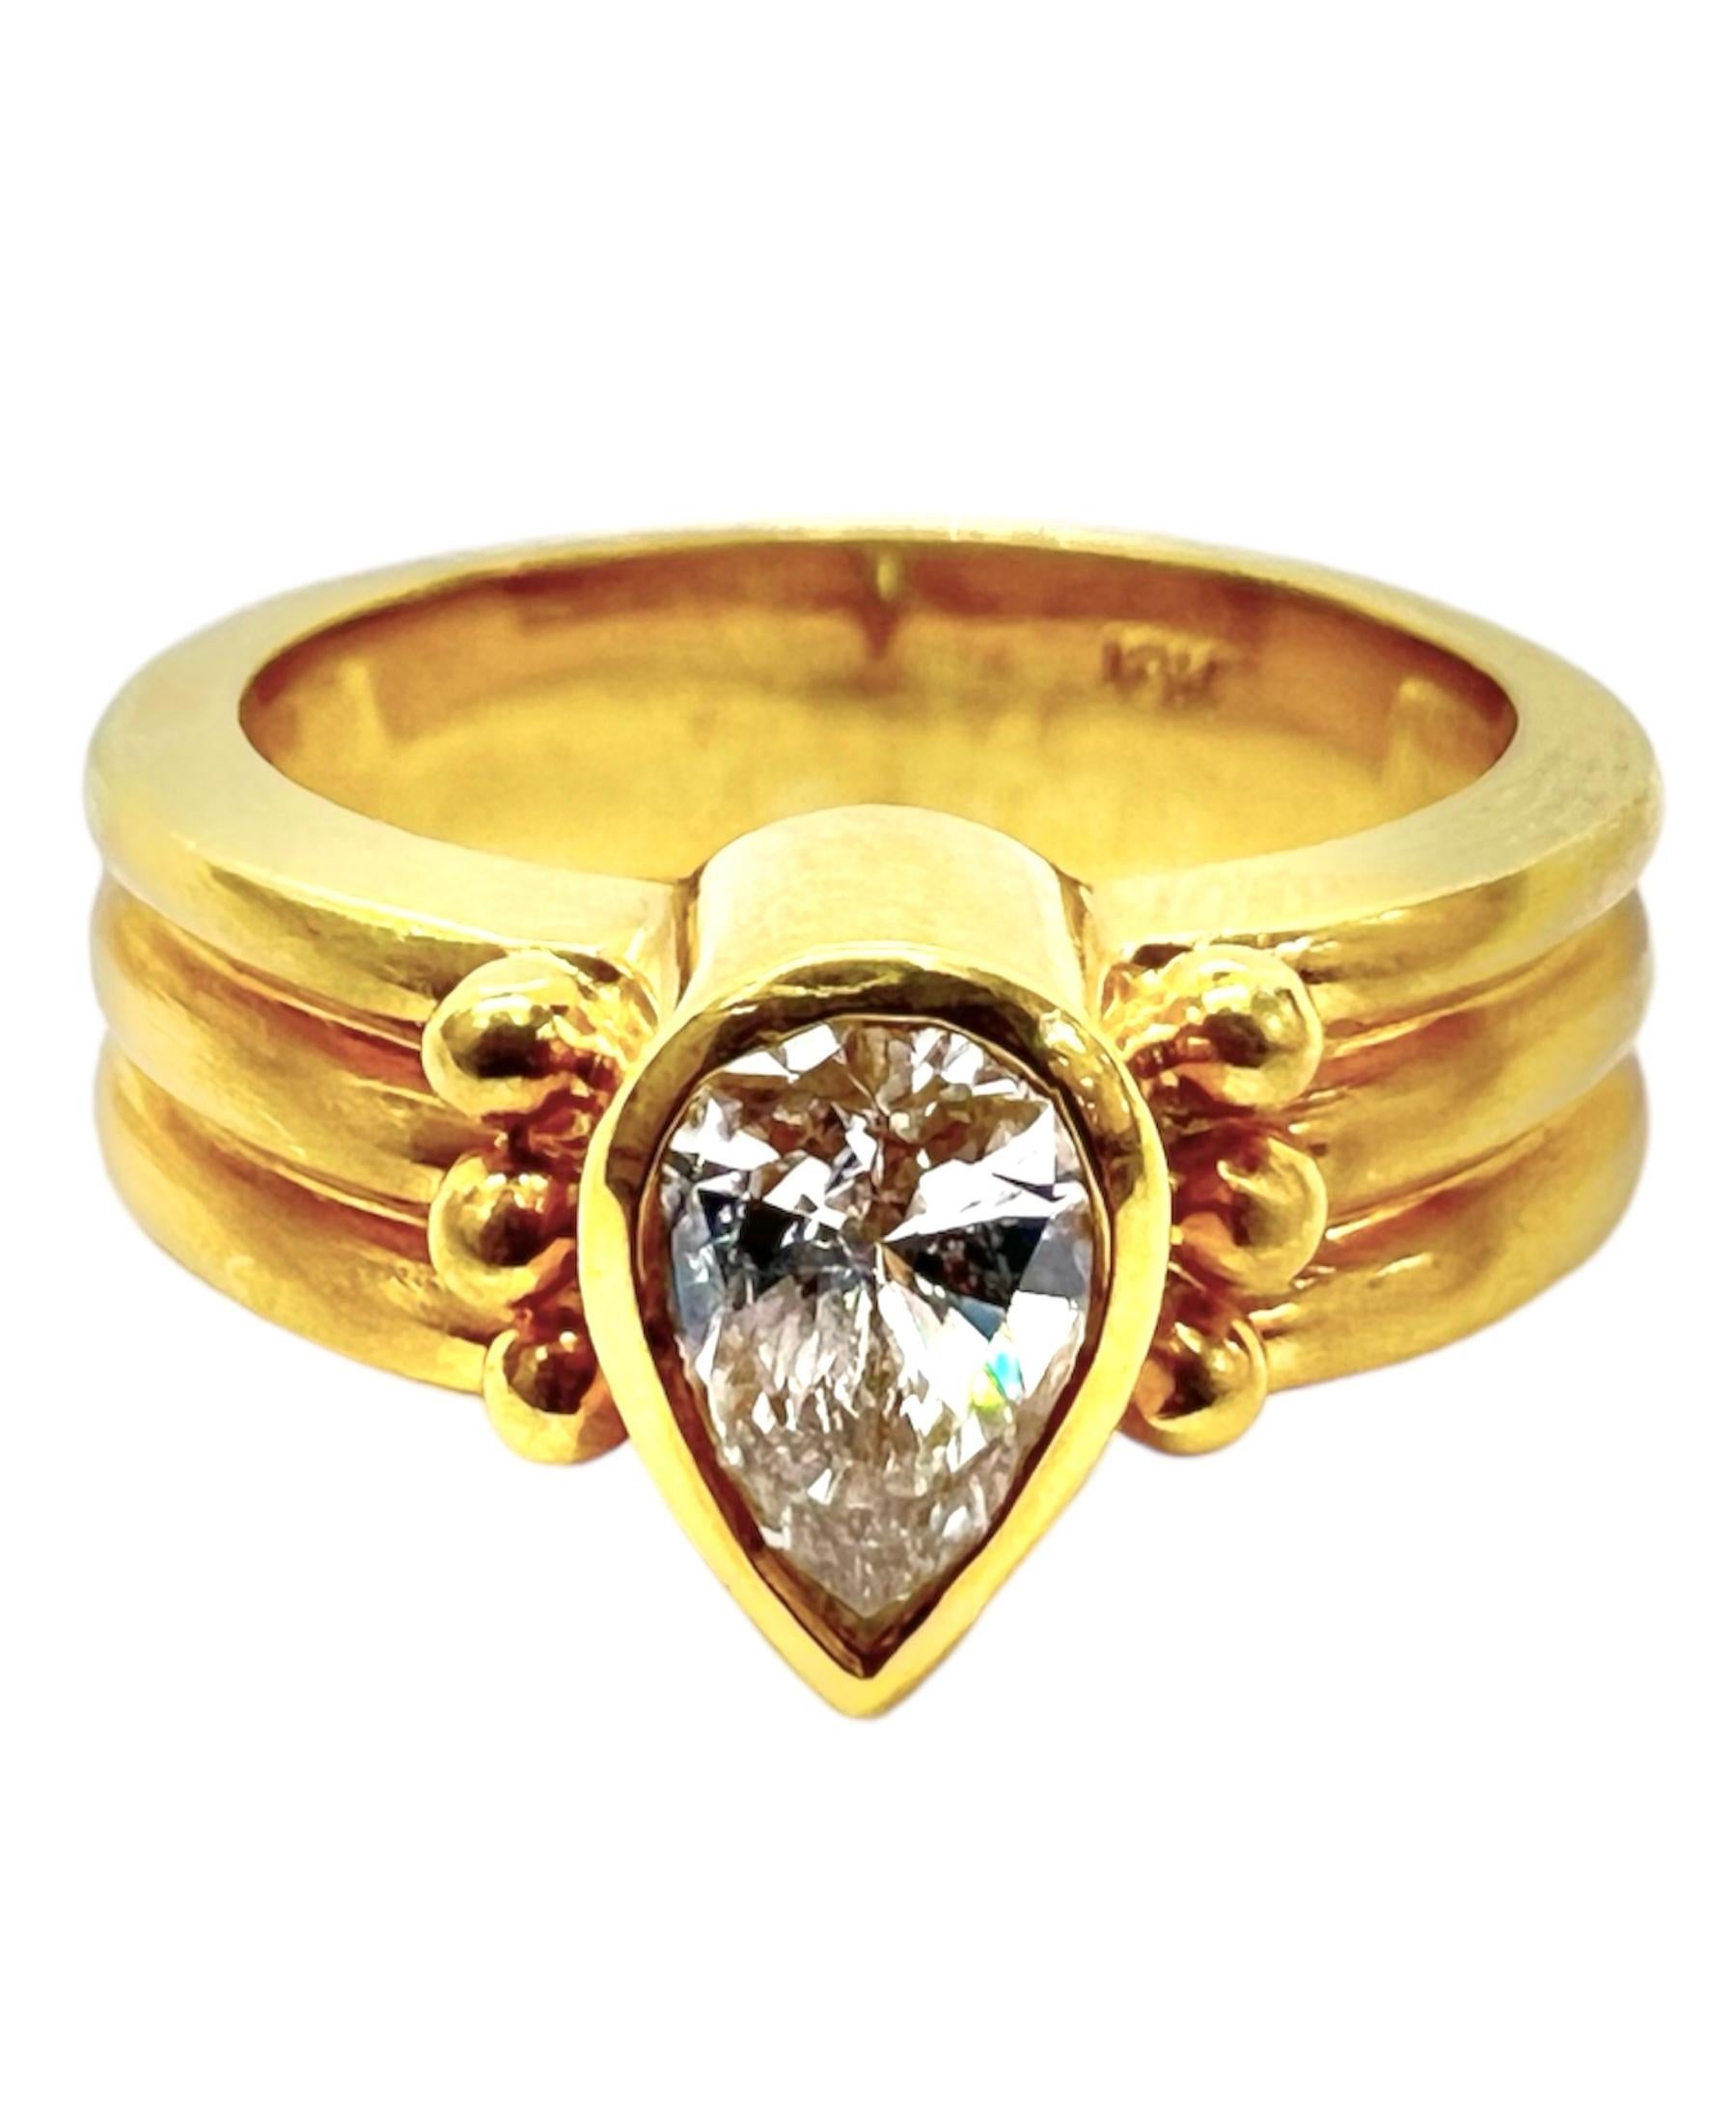 Ring aus 18 Karat Gelbgold mit birnenförmigem Diamanten.

Sophia D von Joseph Dardashti LTD ist seit 35 Jahren weltweit bekannt und lässt sich vom klassischen Art-Déco-Design inspirieren, das mit modernen Fertigungstechniken verschmilzt.  